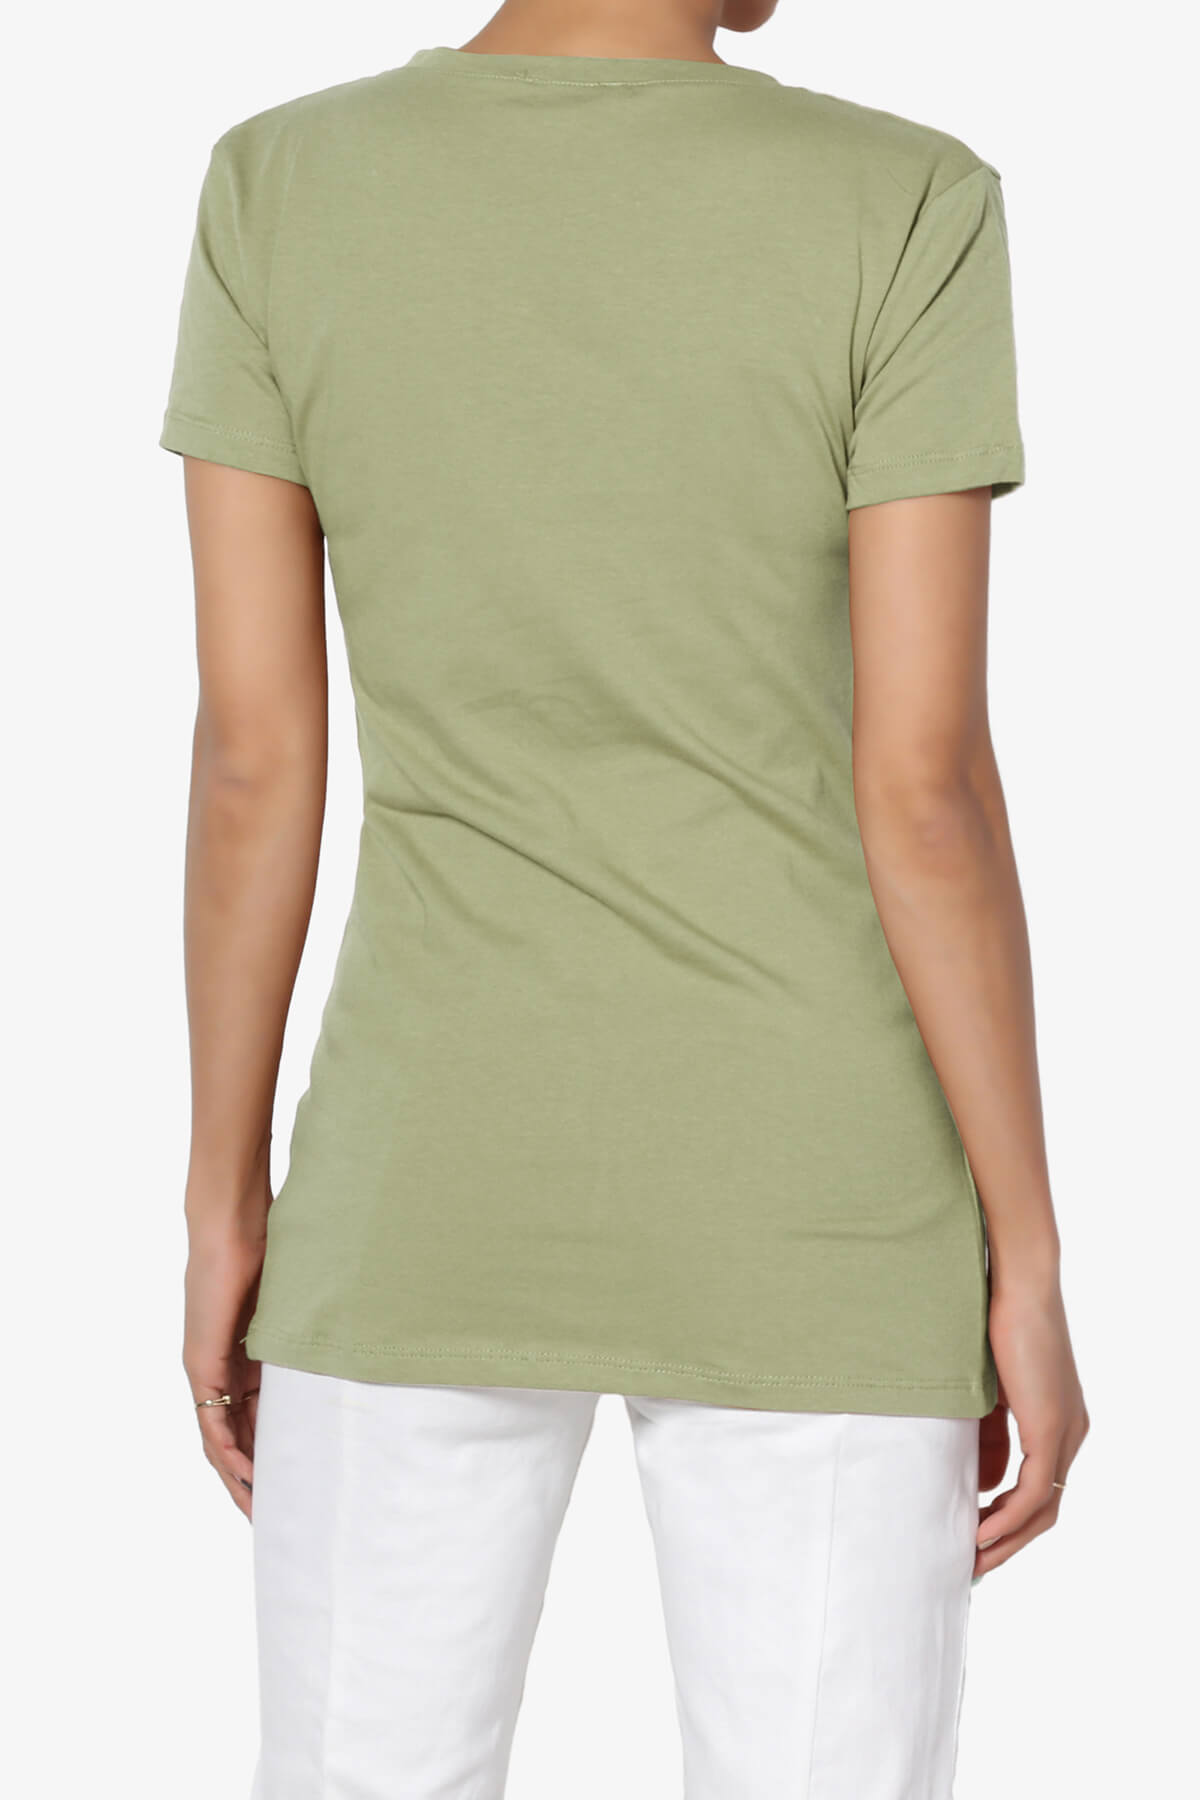 Candela V-Neck Short Sleeve T-Shirts SAGE_2